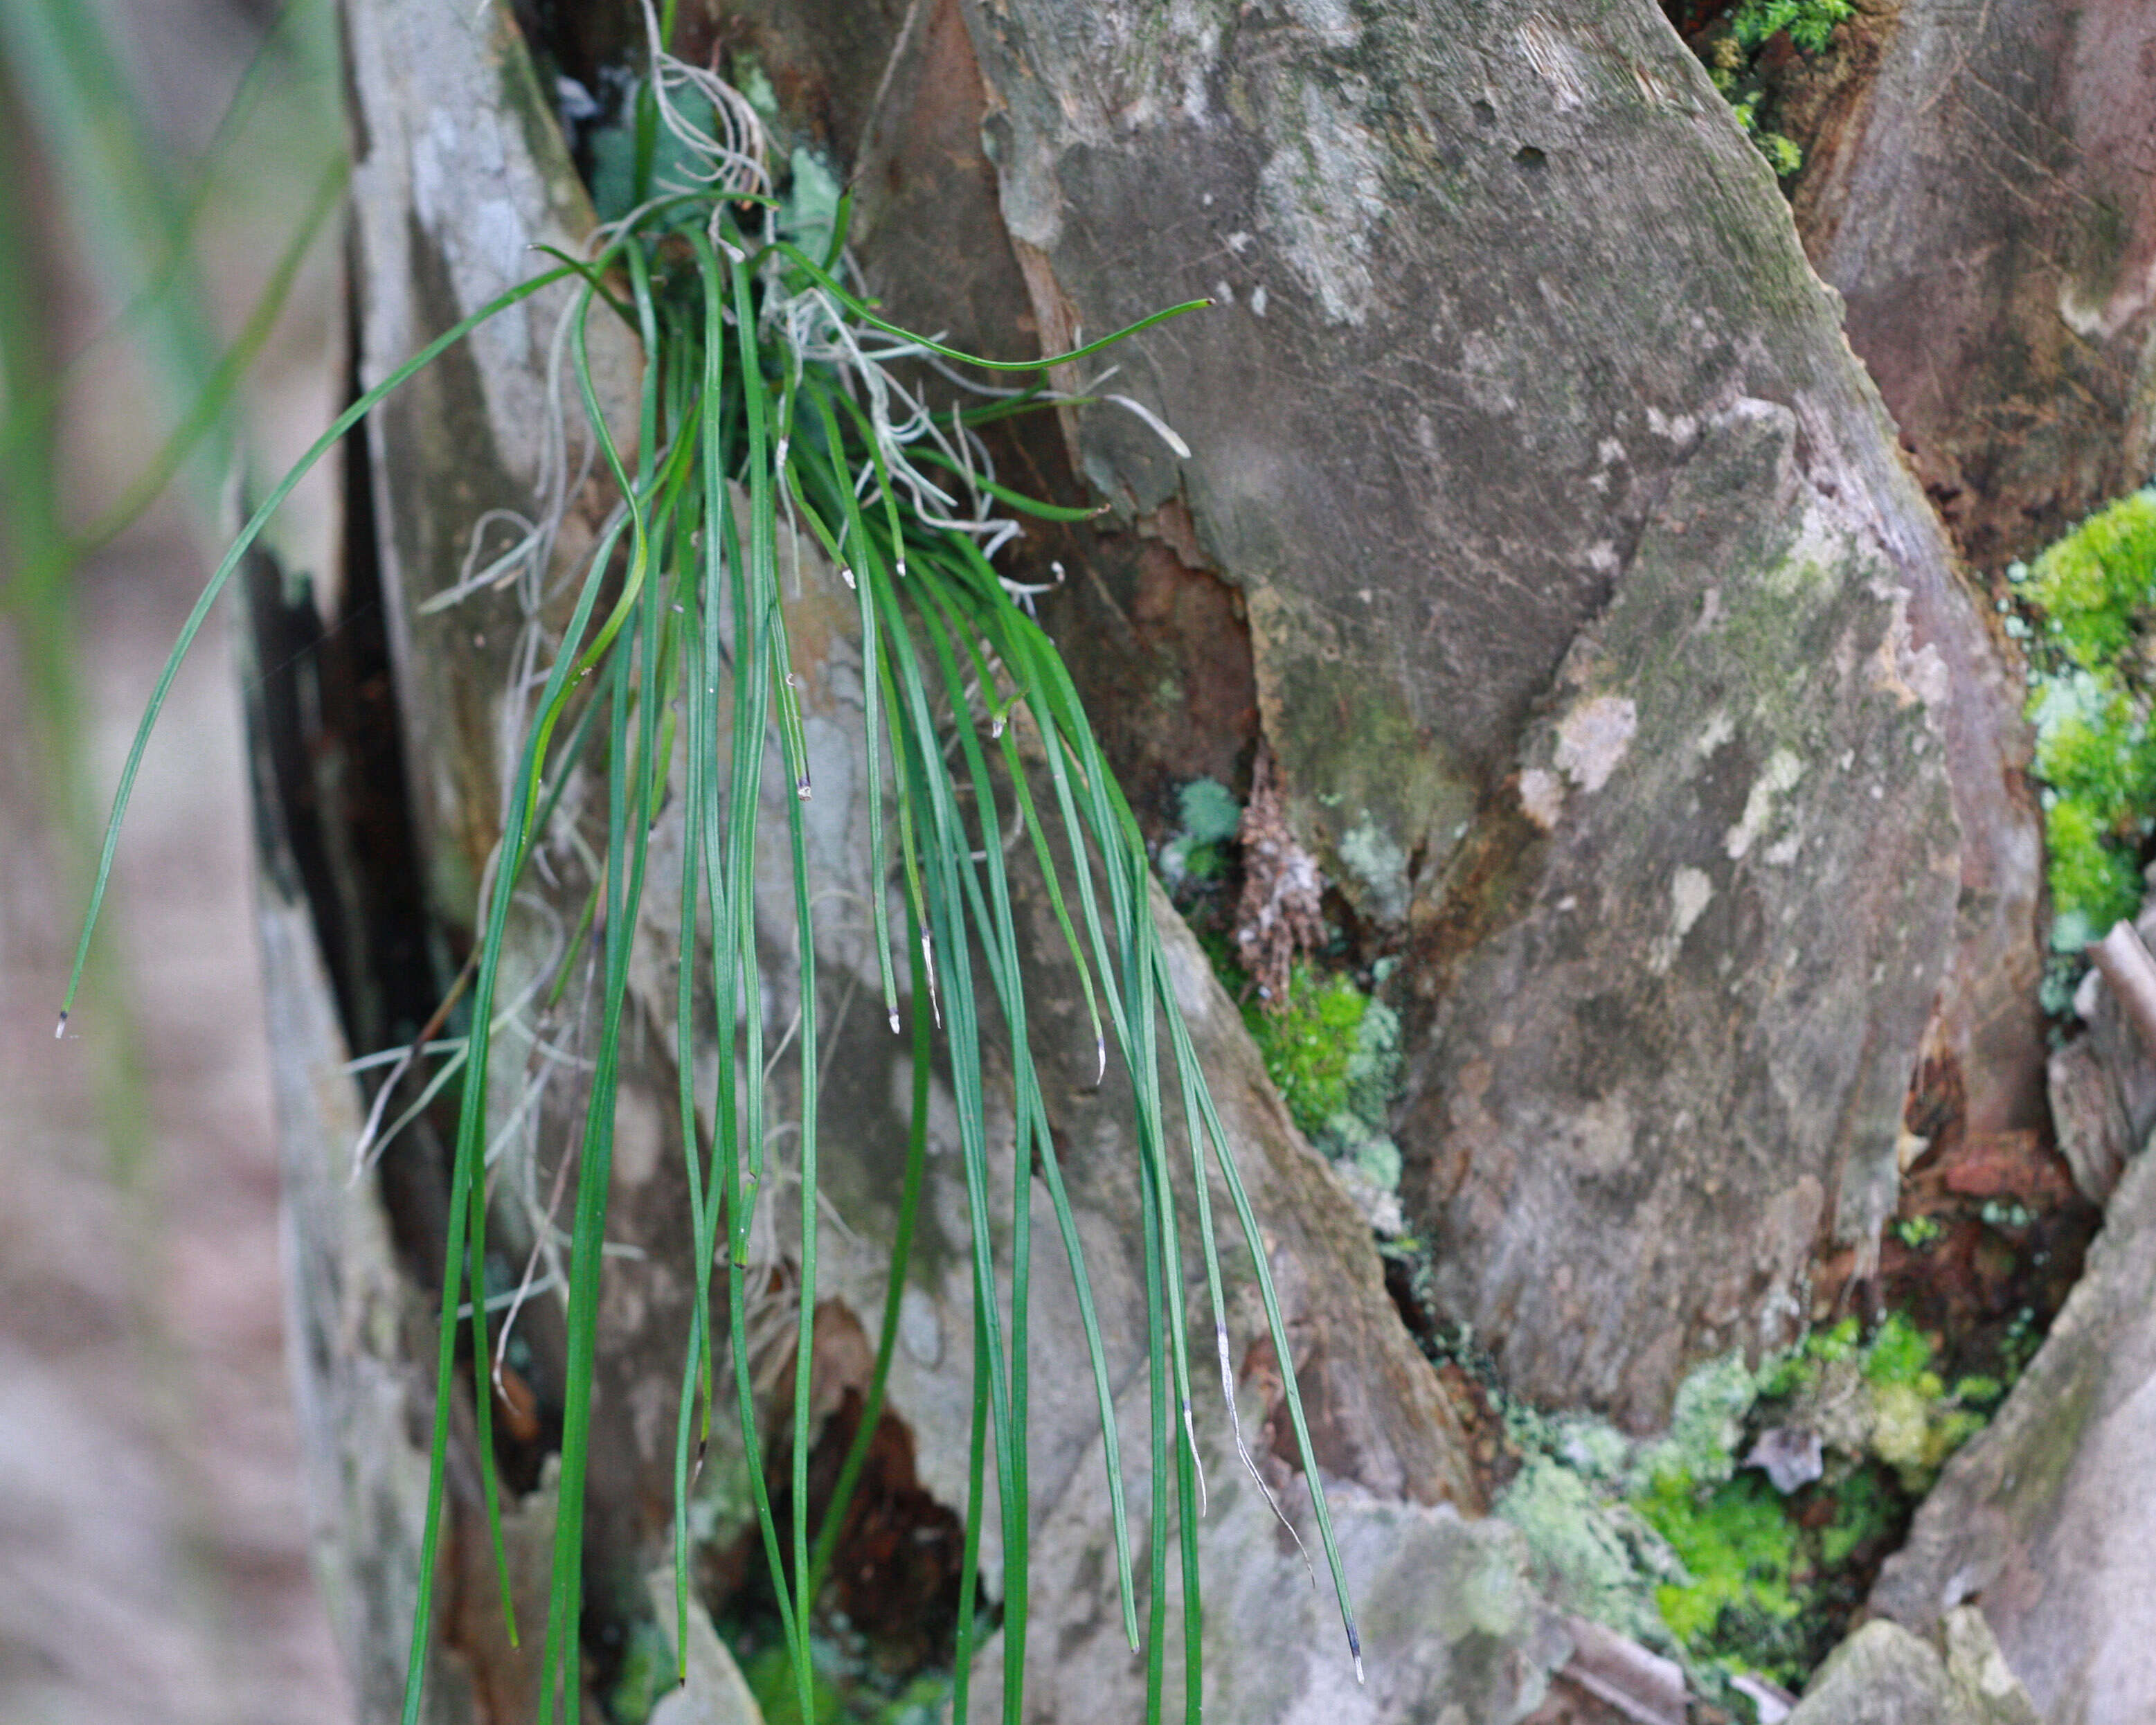 Image of Shoelace fern